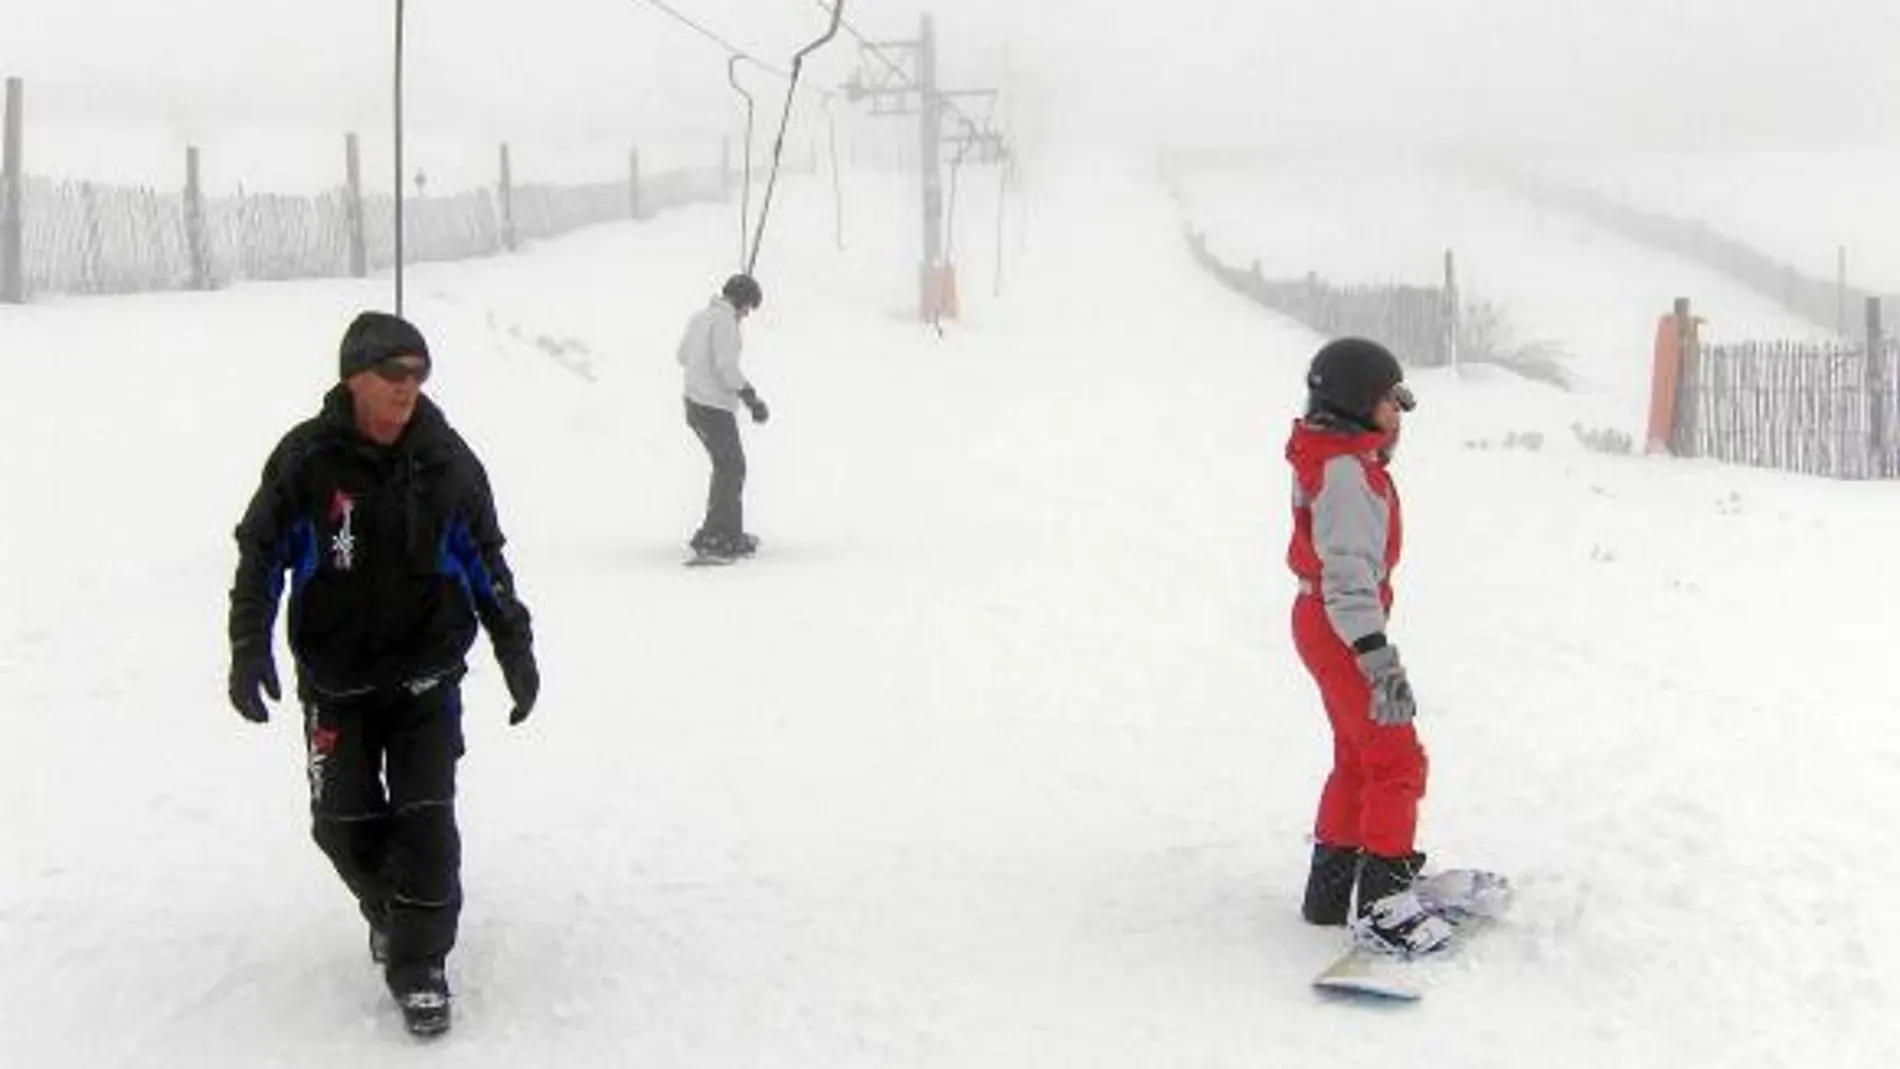 Amantes del esquí disfrutan de las estaciones de San Isidro y Leitariegos